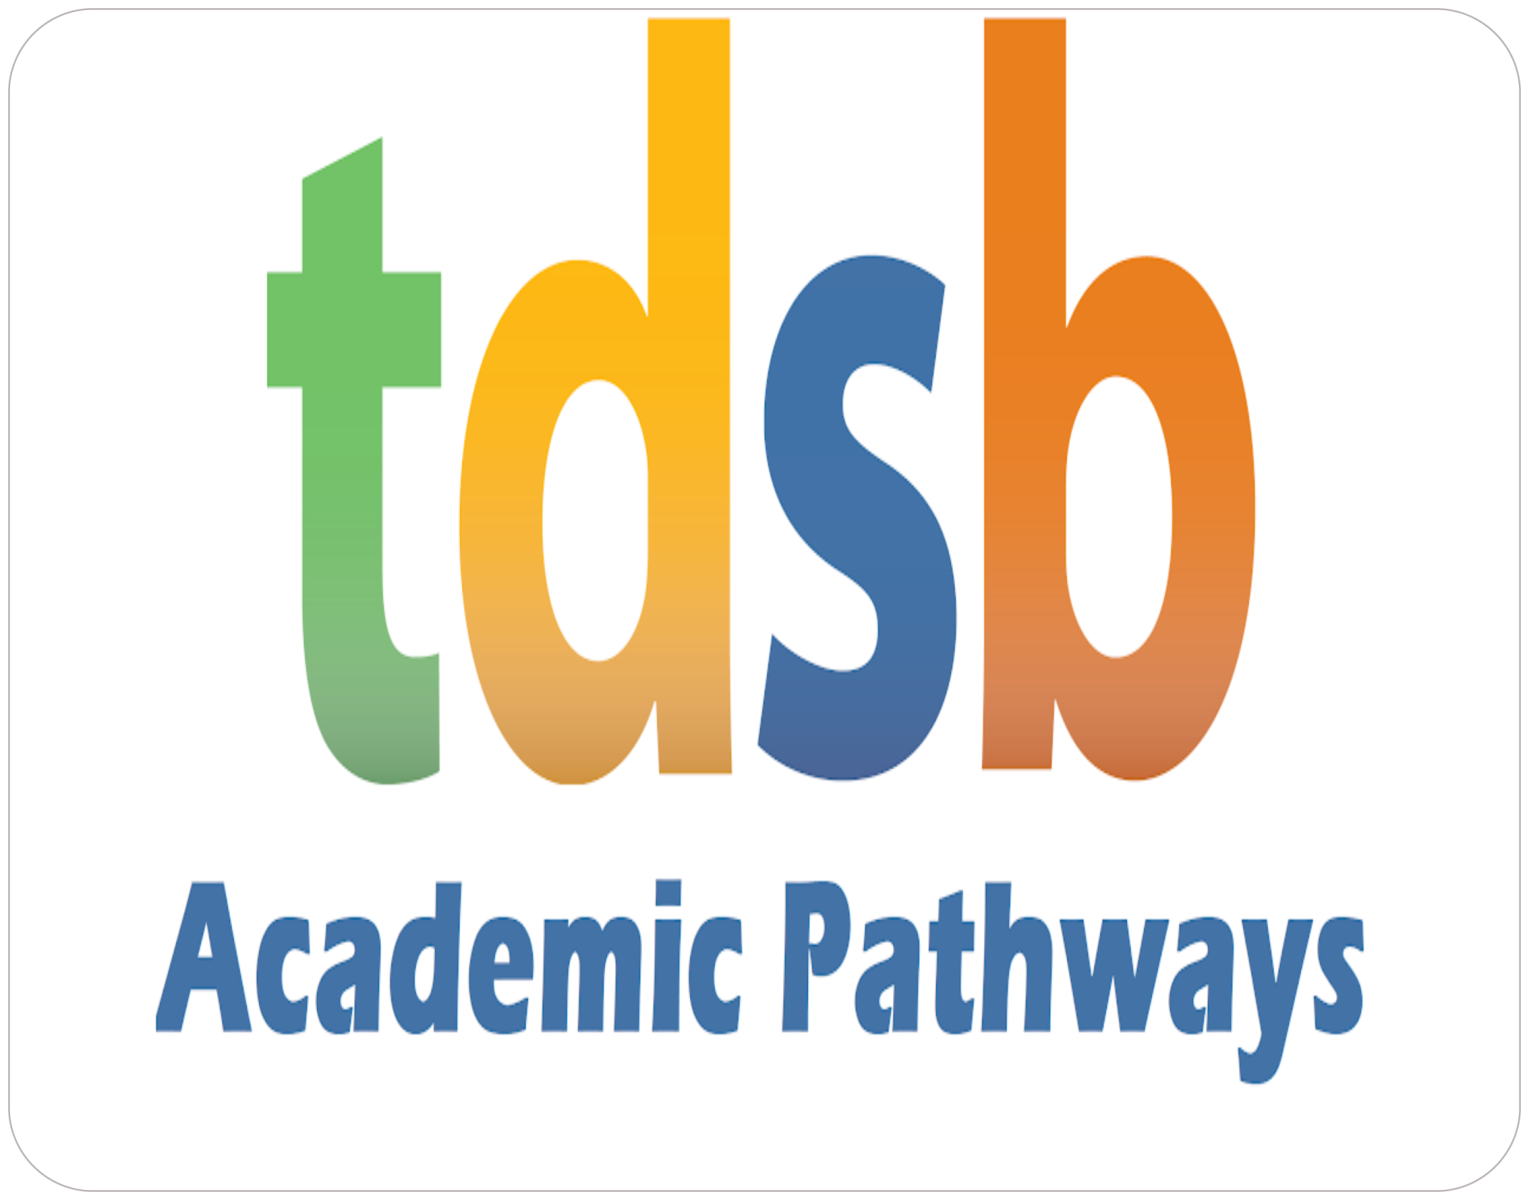 TDSB Academic Pathways